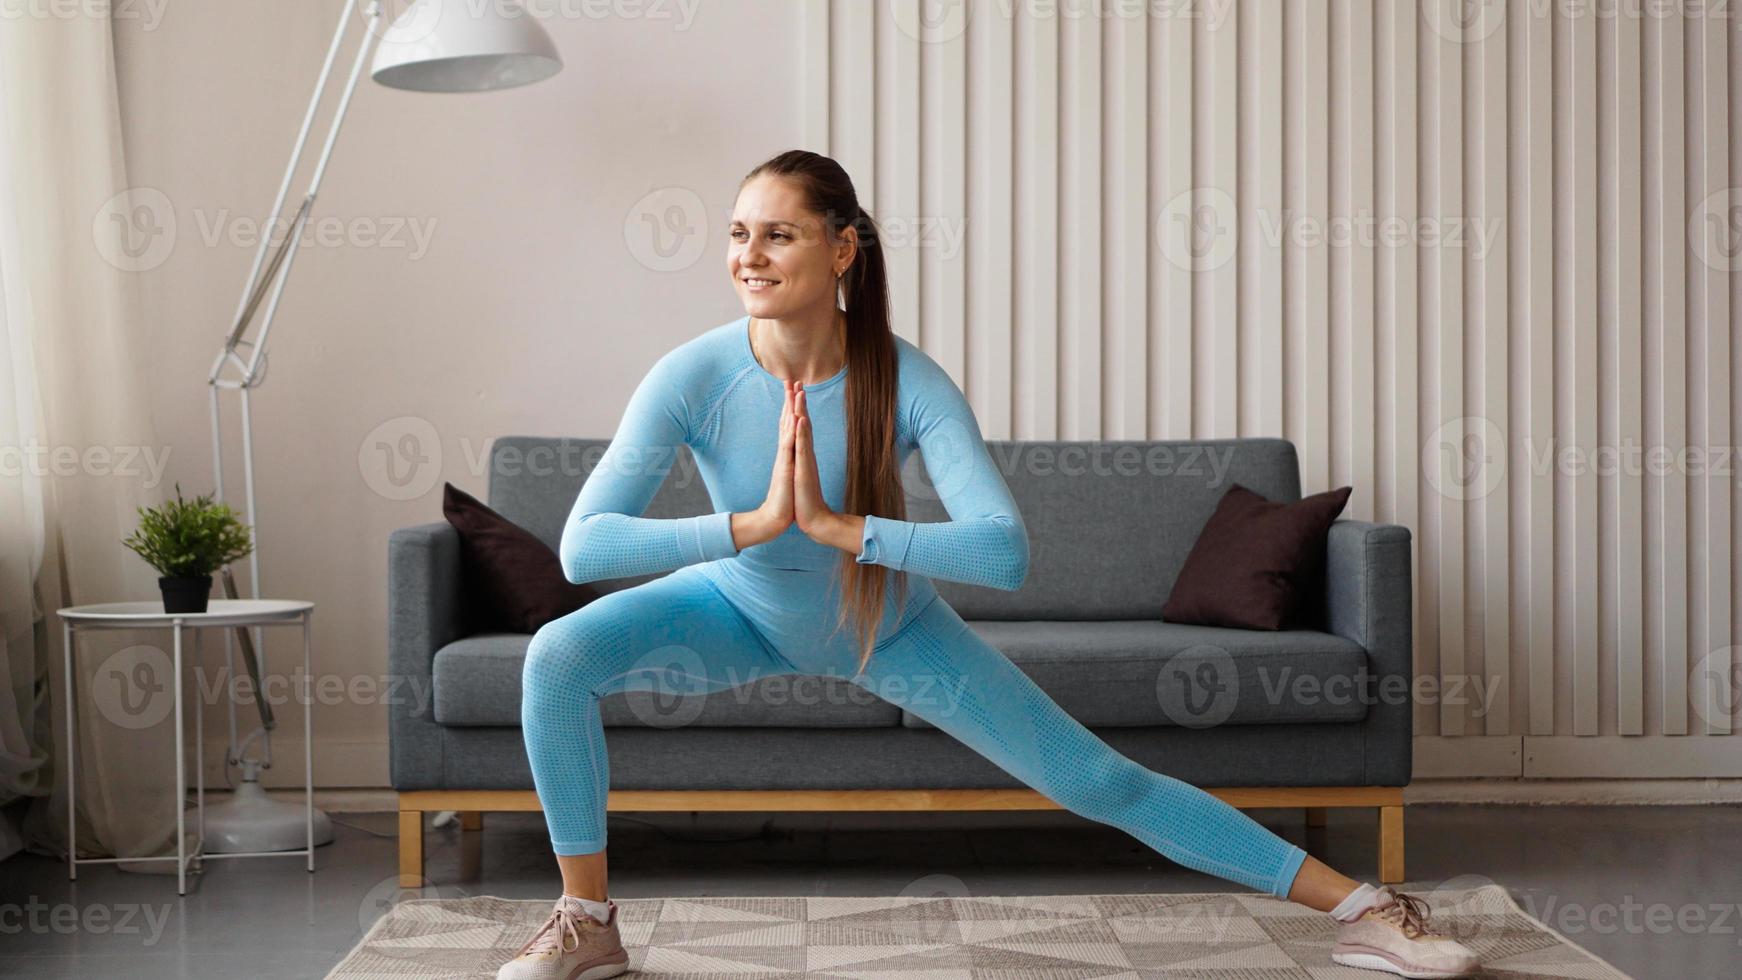 jovem determinada mulher magra confiante fazendo exercícios em casa foto